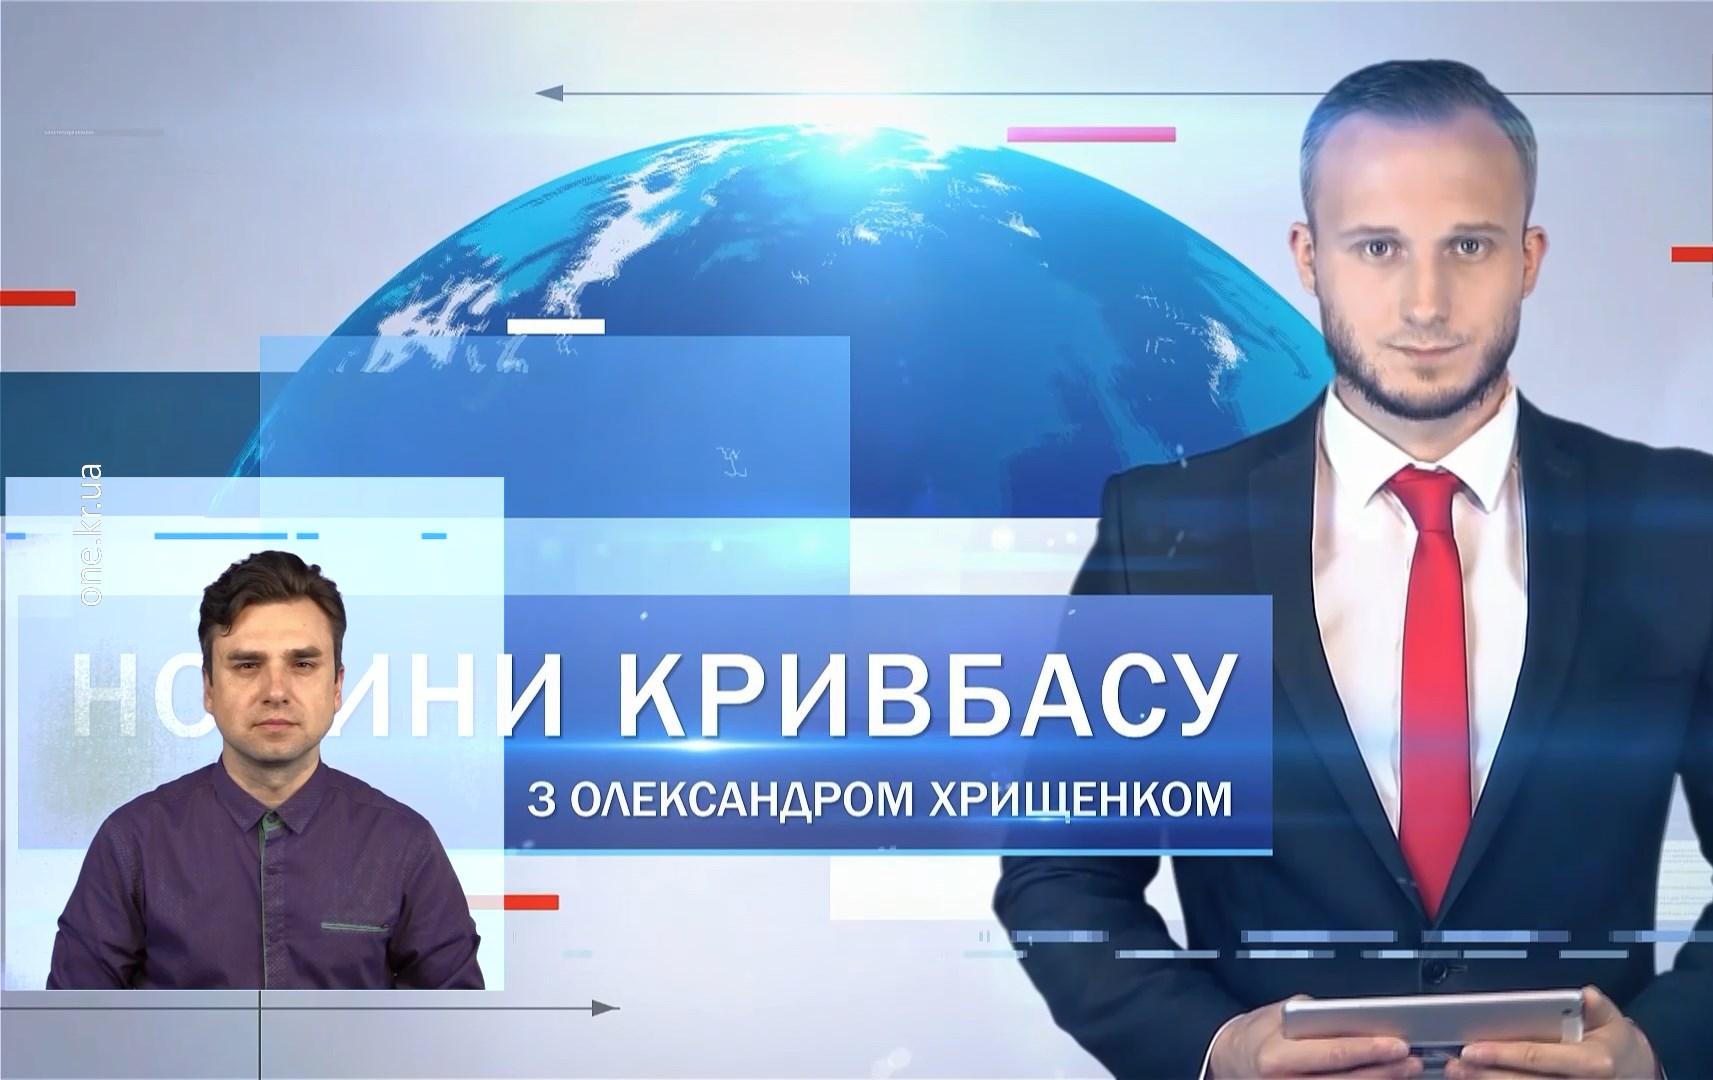 Новини Кривбасу 2 листопада (сурдопереклад): акція «підвези медика», «замінували» аеропорт, автовишка